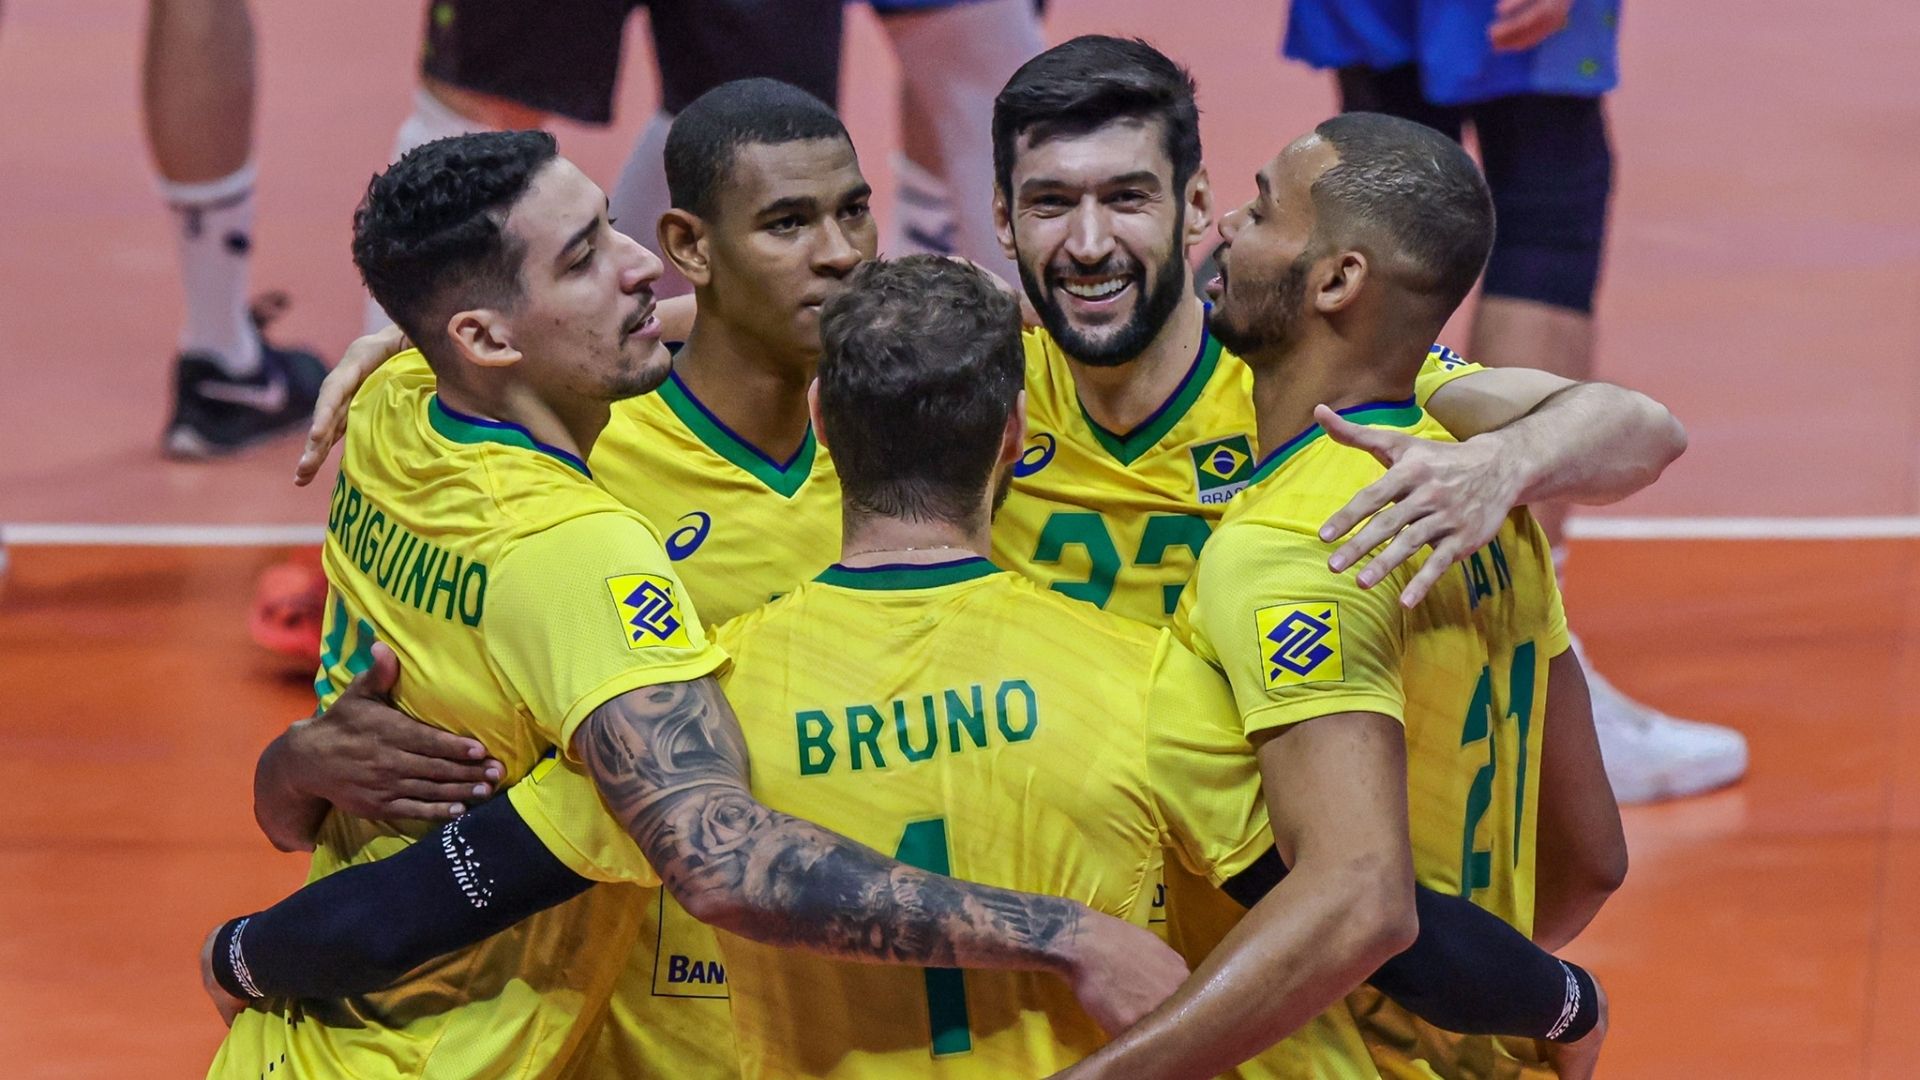 Adversário do Brasil nas oitavas do Mundial de vôlei, Irã busca